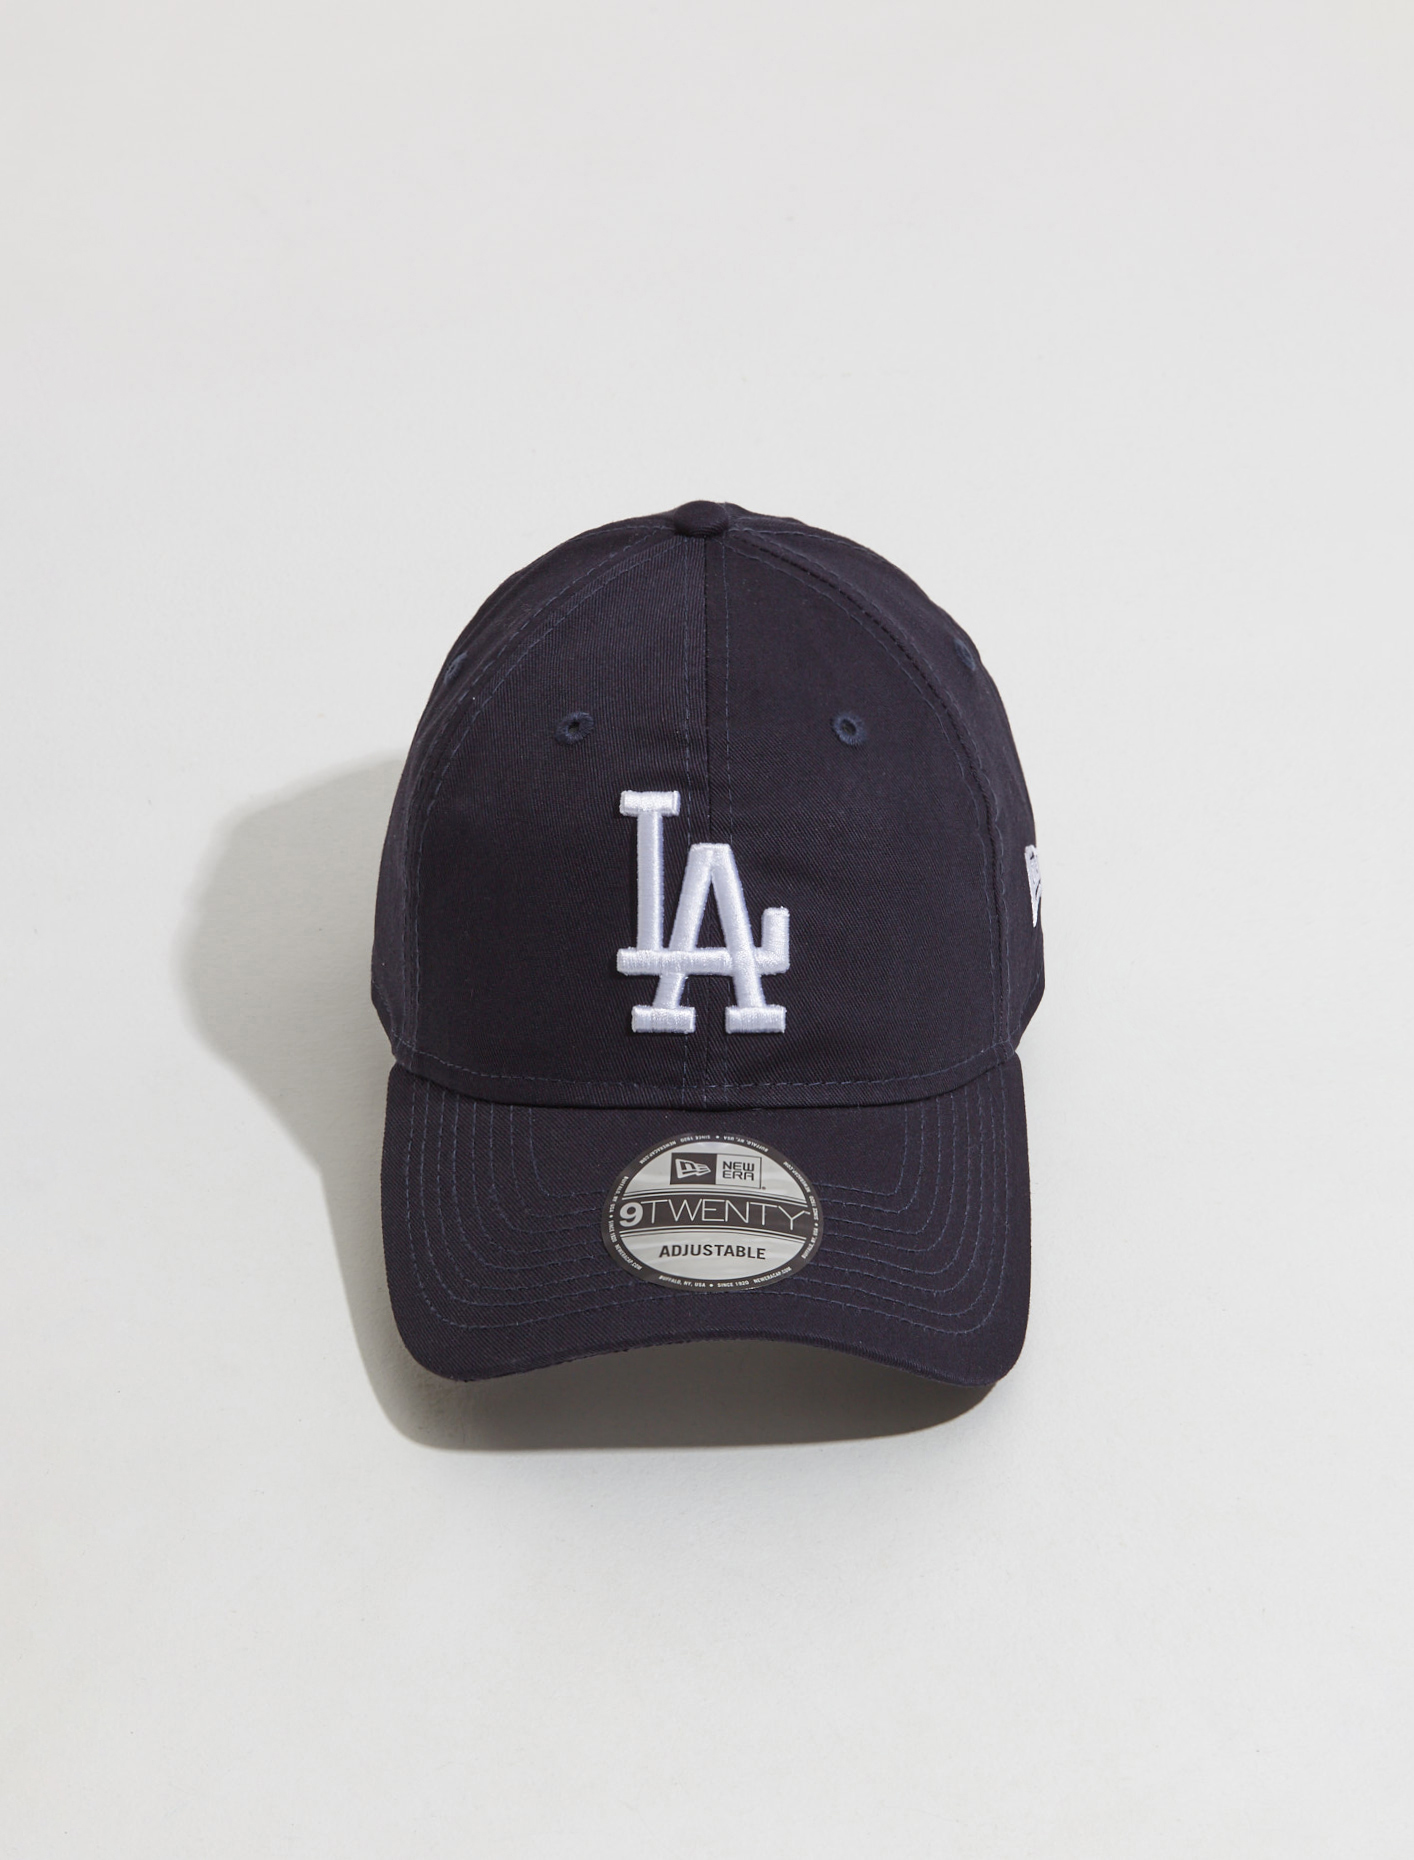 compleet Defecte Huichelaar New Era 9TWENTY Los Angeles Dodgers Cap in Navy | Voo Store Berlin |  Worldwide Shipping